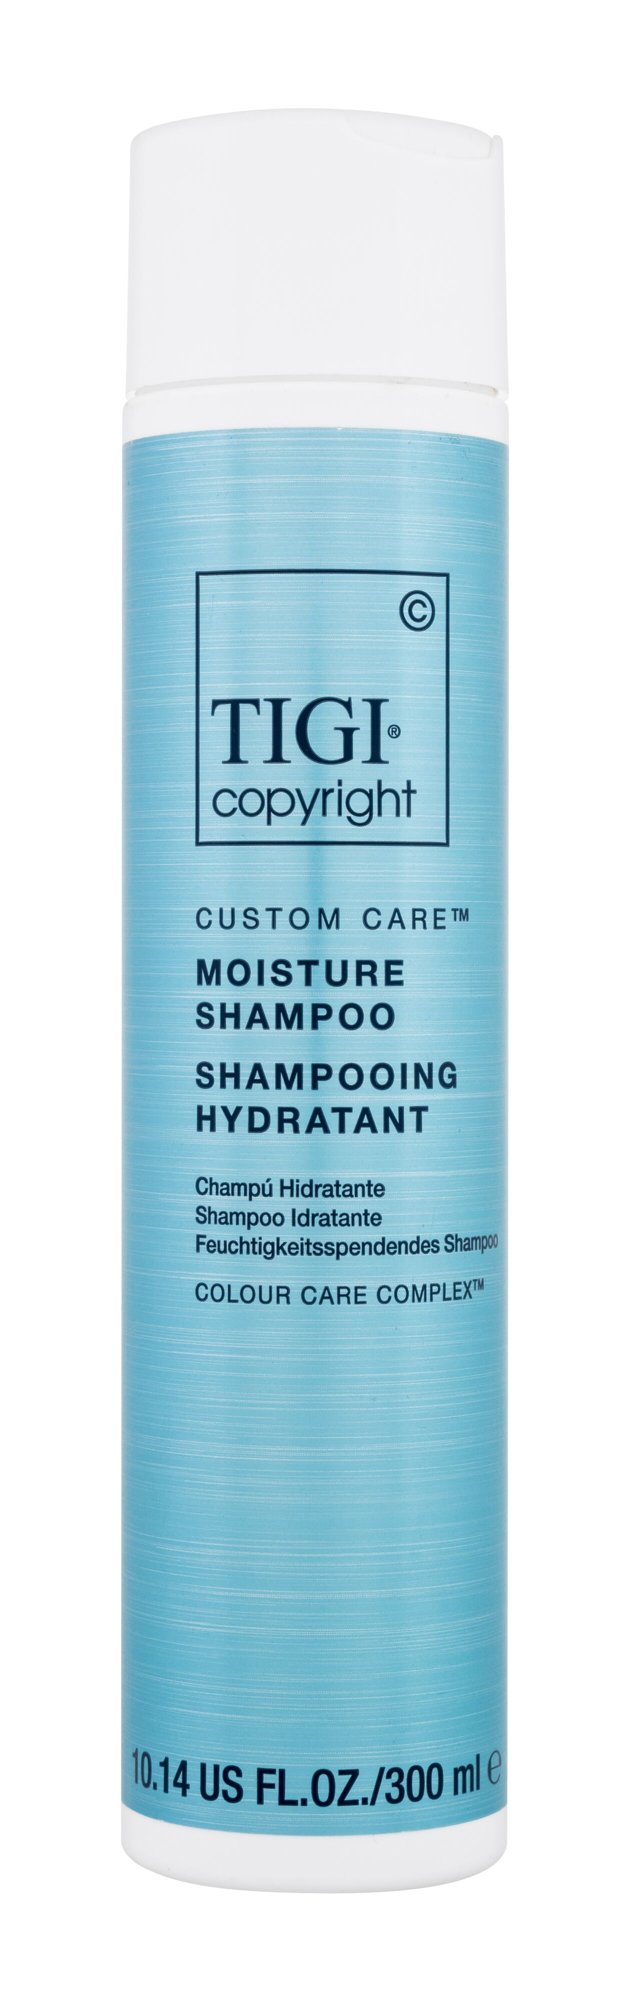 Tigi Copyright Custom Care Moisture Shampoo šampūnas